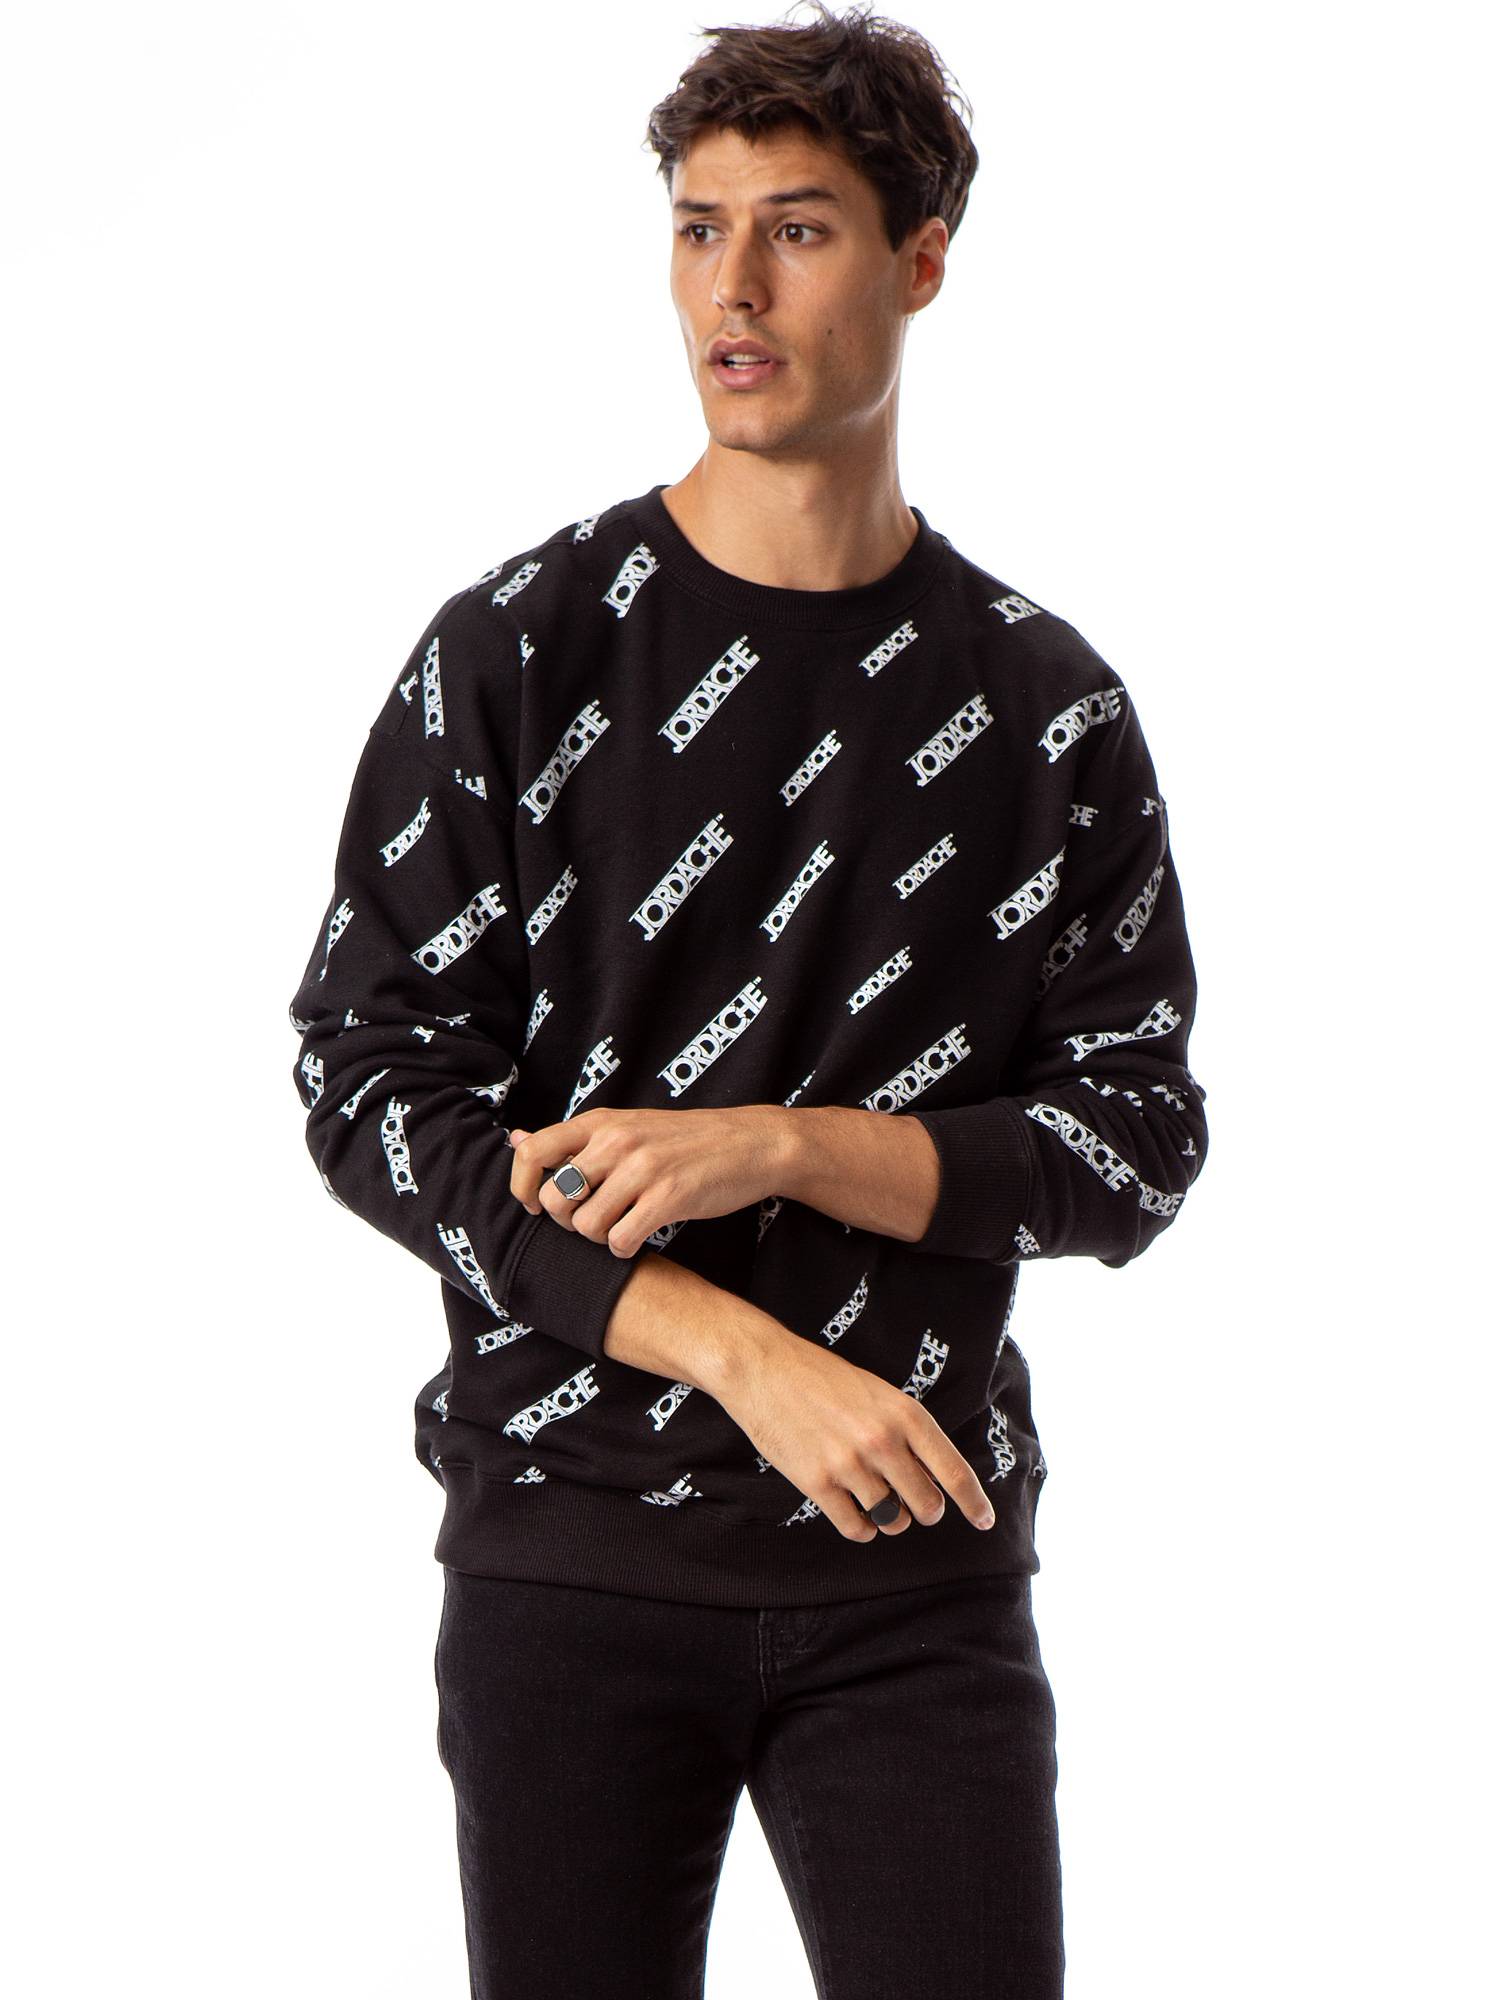 Jordache Vintage Men's Alex Crewneck Sweatshirt, Sizes S-2XL - image 1 of 8